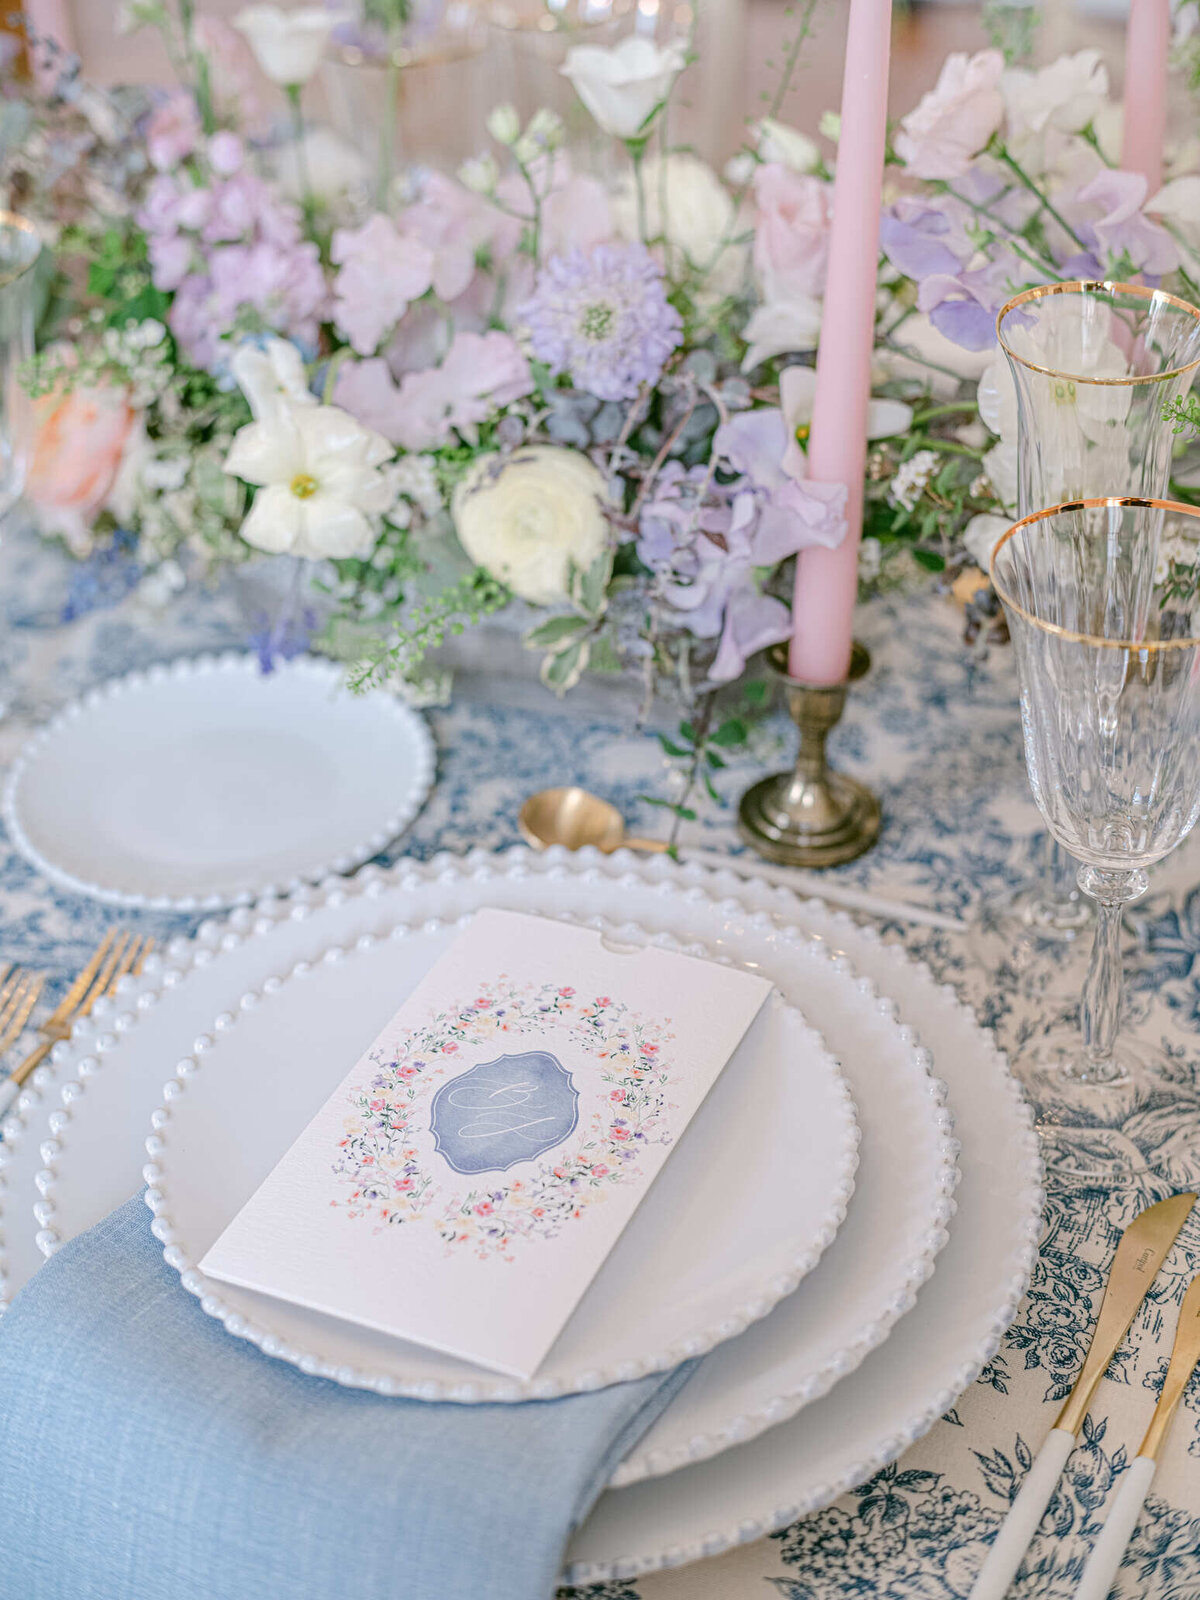 Chateau-de-Ferriere-Wedding-table-design-7